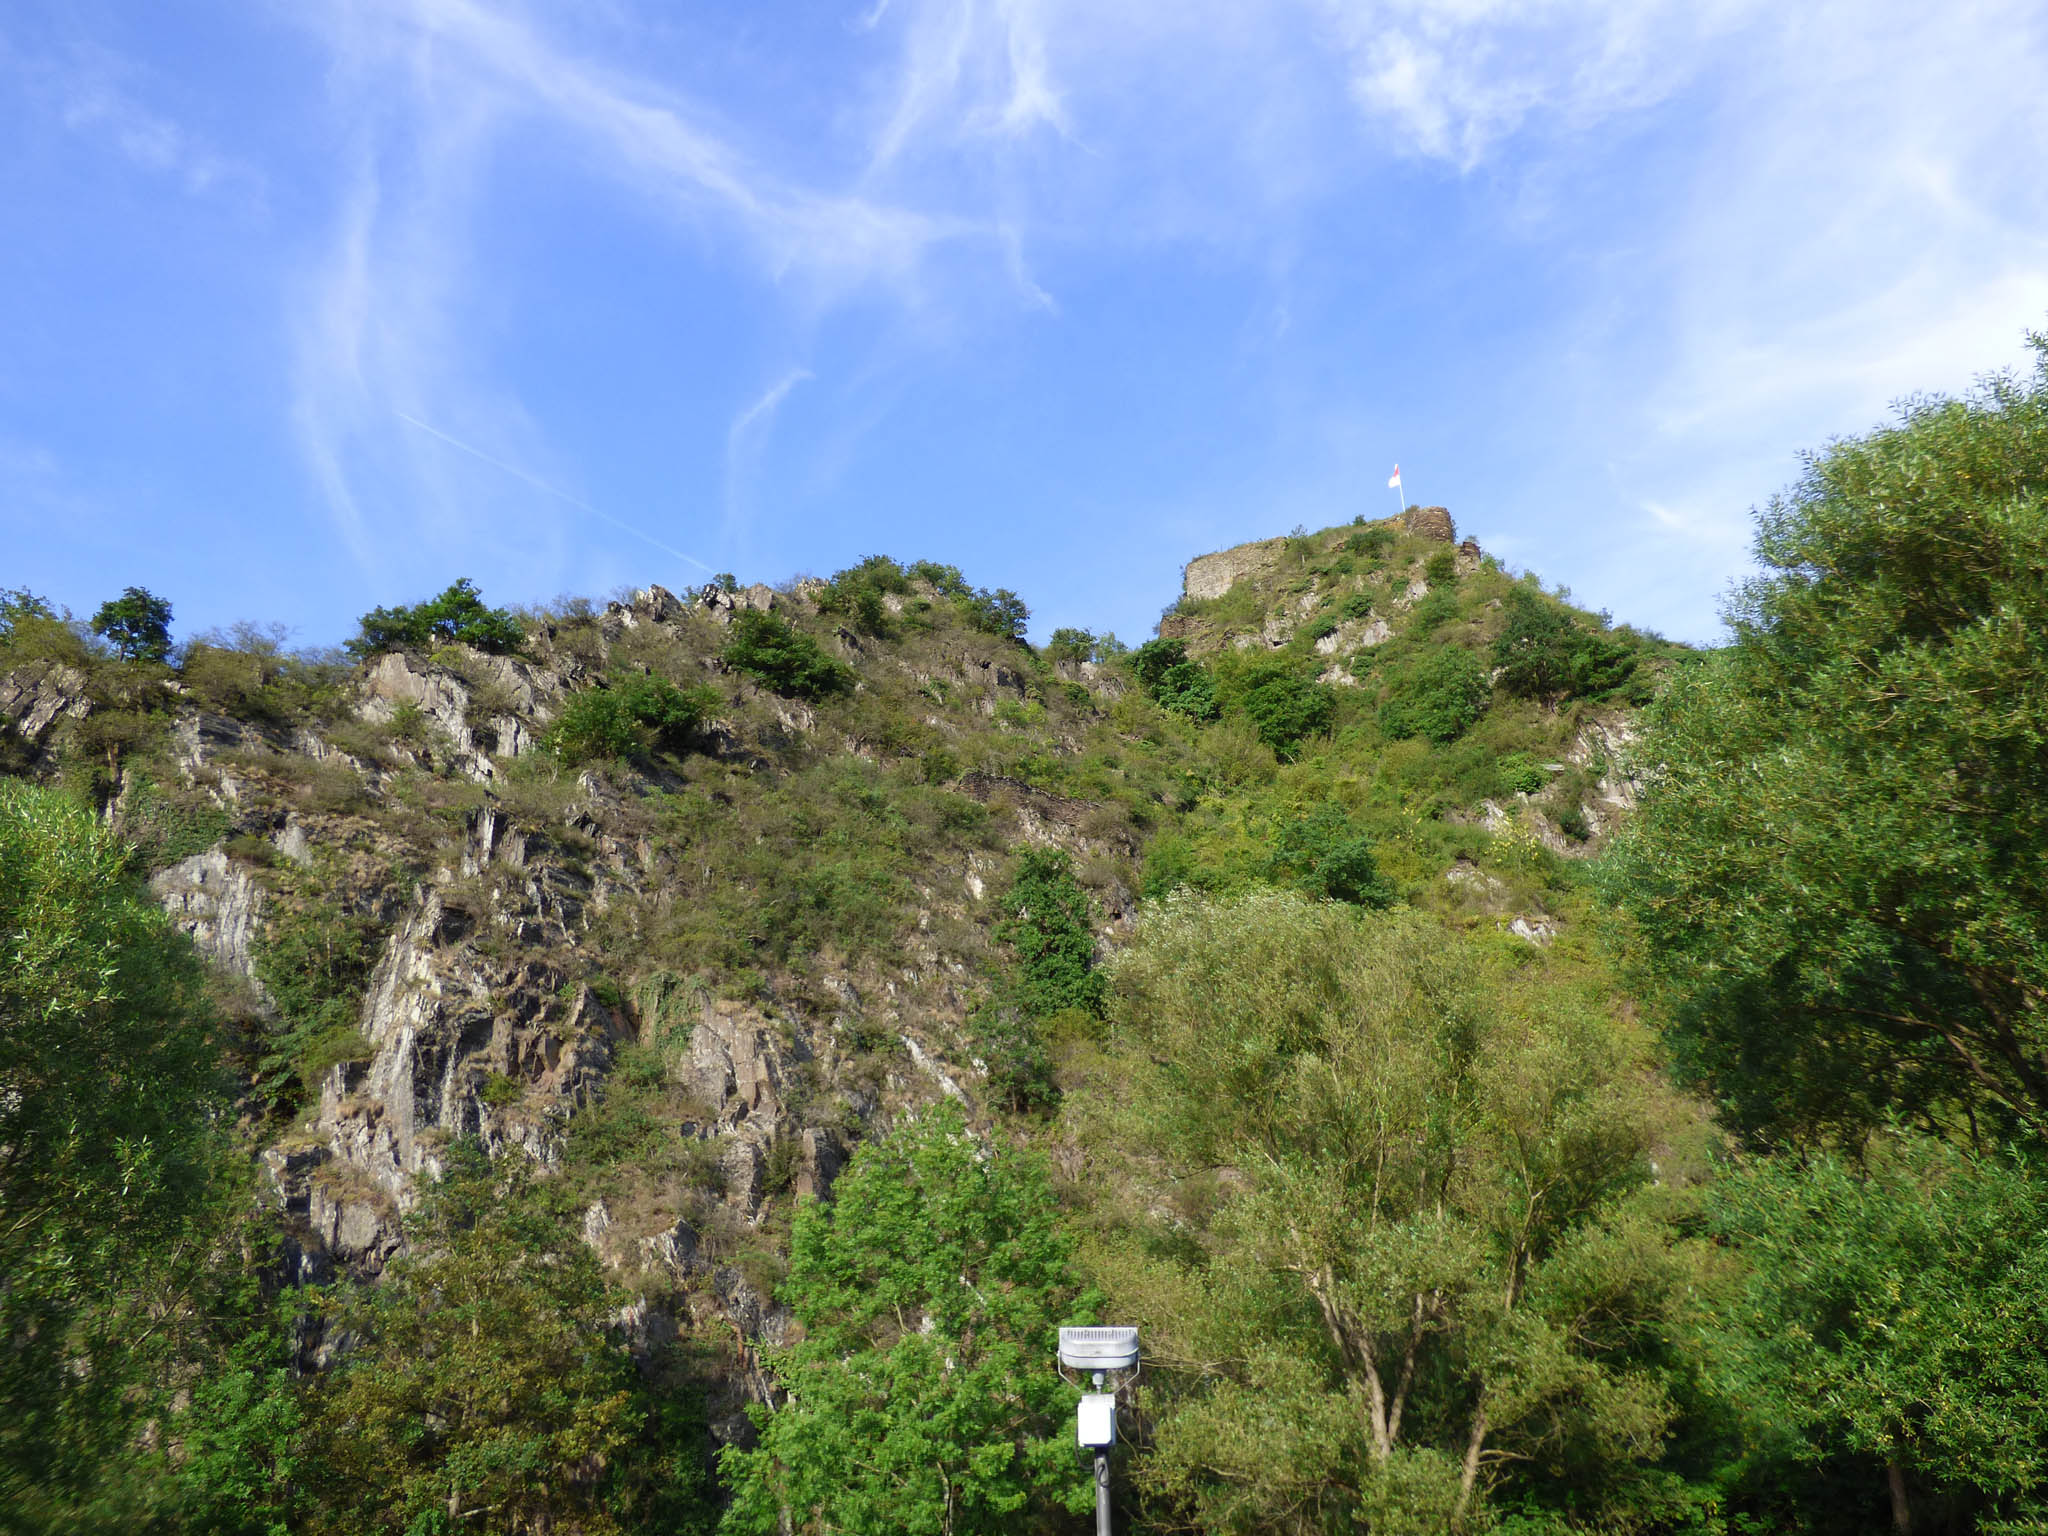 Burgreste und steile Felsgrate in Mayschoß